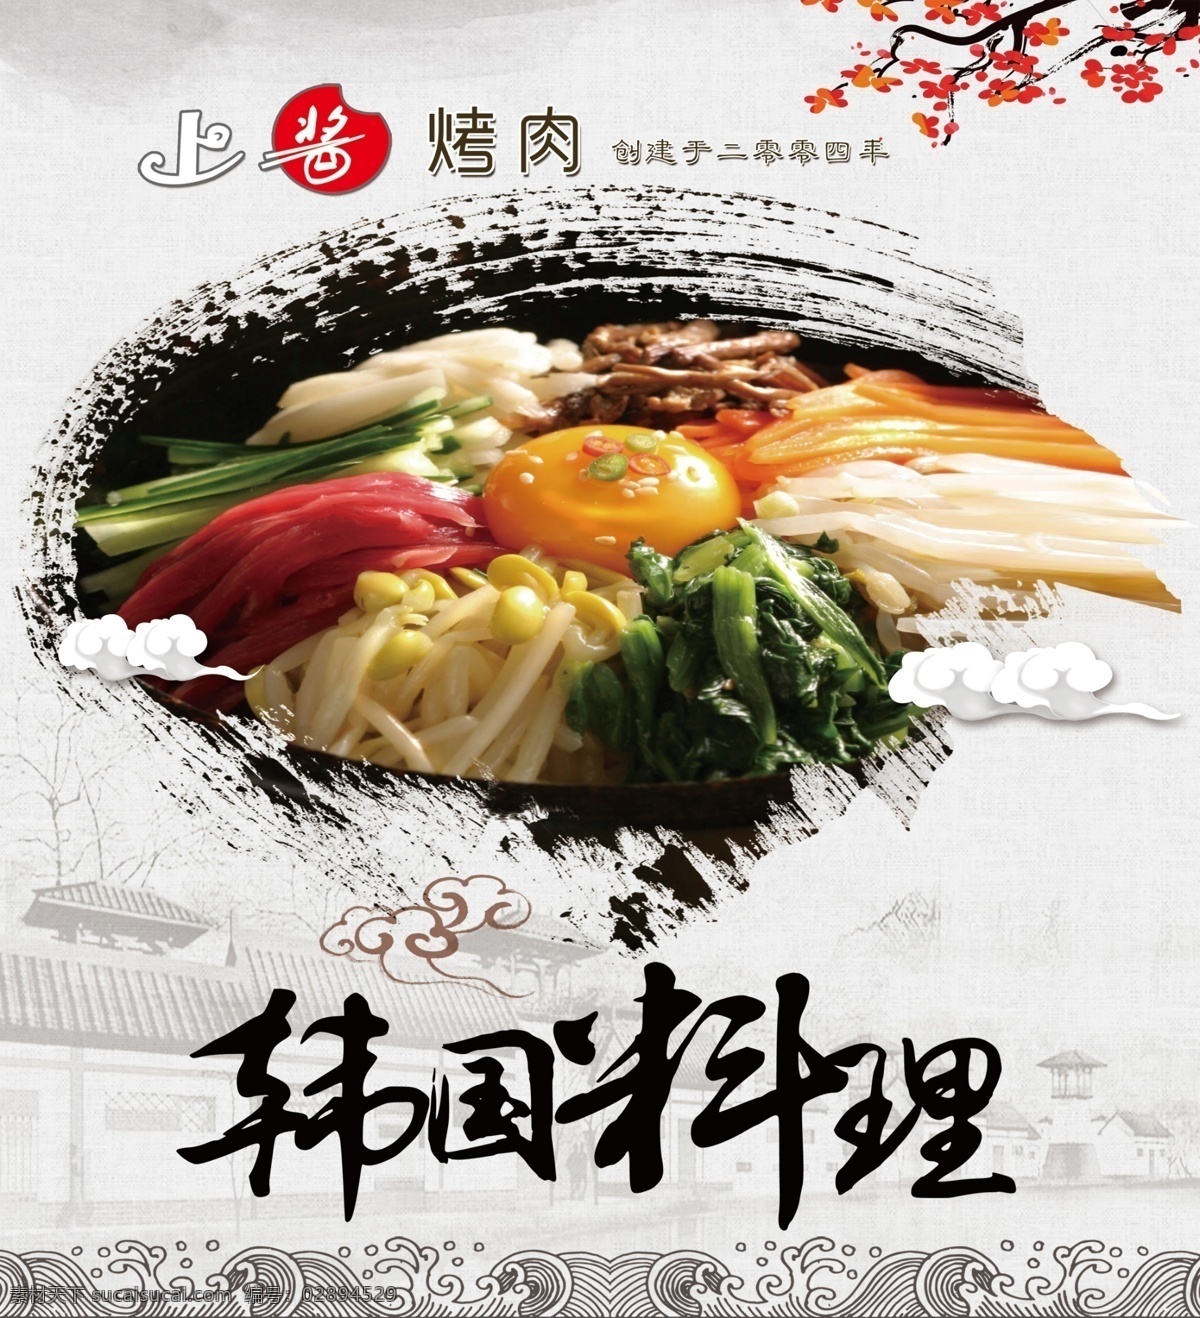 韩国料理 韩国文化 韩国元素 韩国美食 美食 韩国